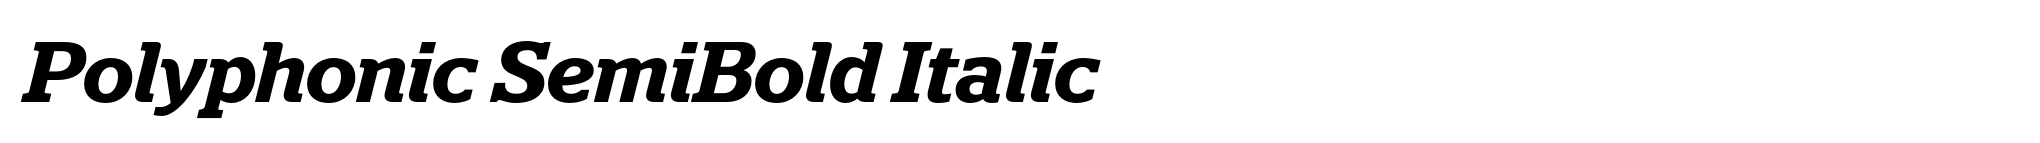 Polyphonic SemiBold Italic image